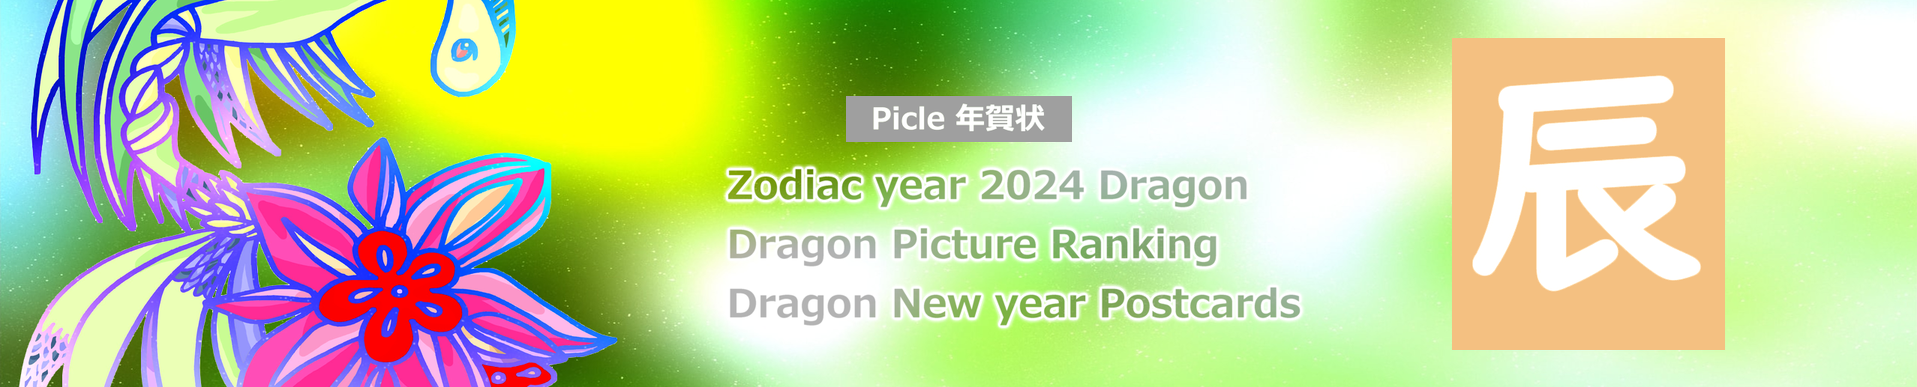 Picle年賀状 2024 Зодиакальный дракон арт бесплатный фото материал оригинальный шаблон карты изображение печать скачать